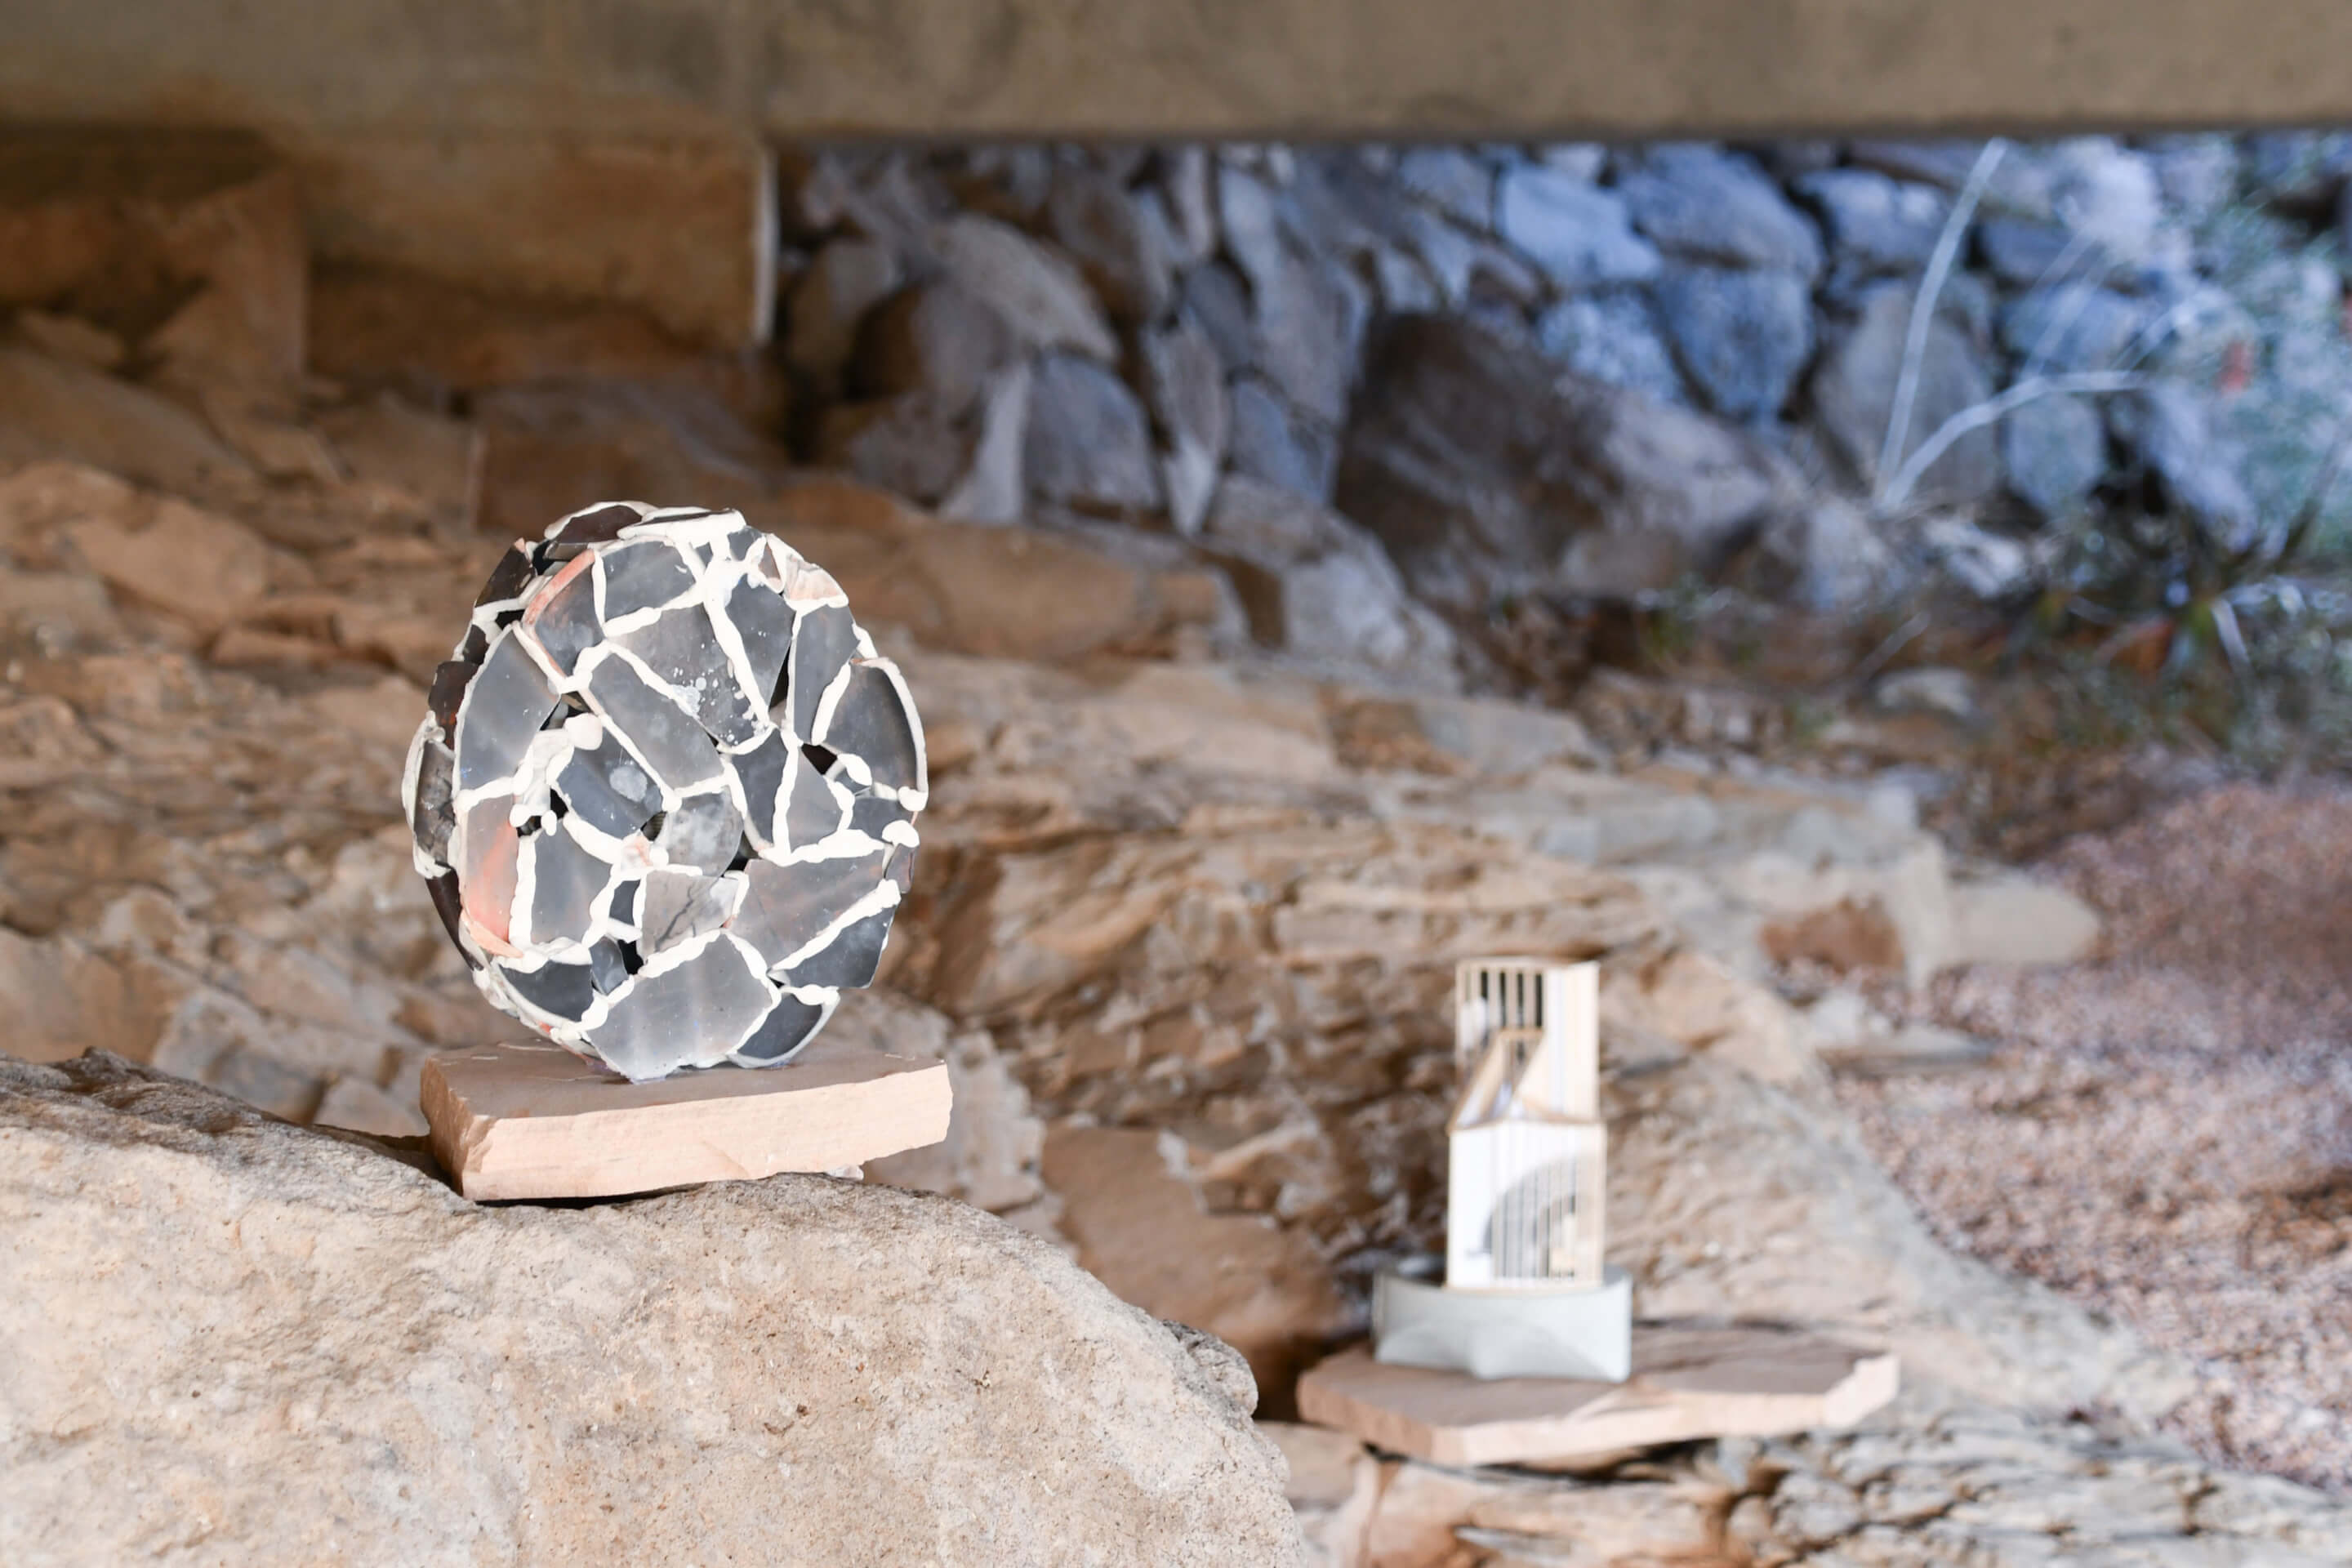 art objects instsalled in a rocky landscape